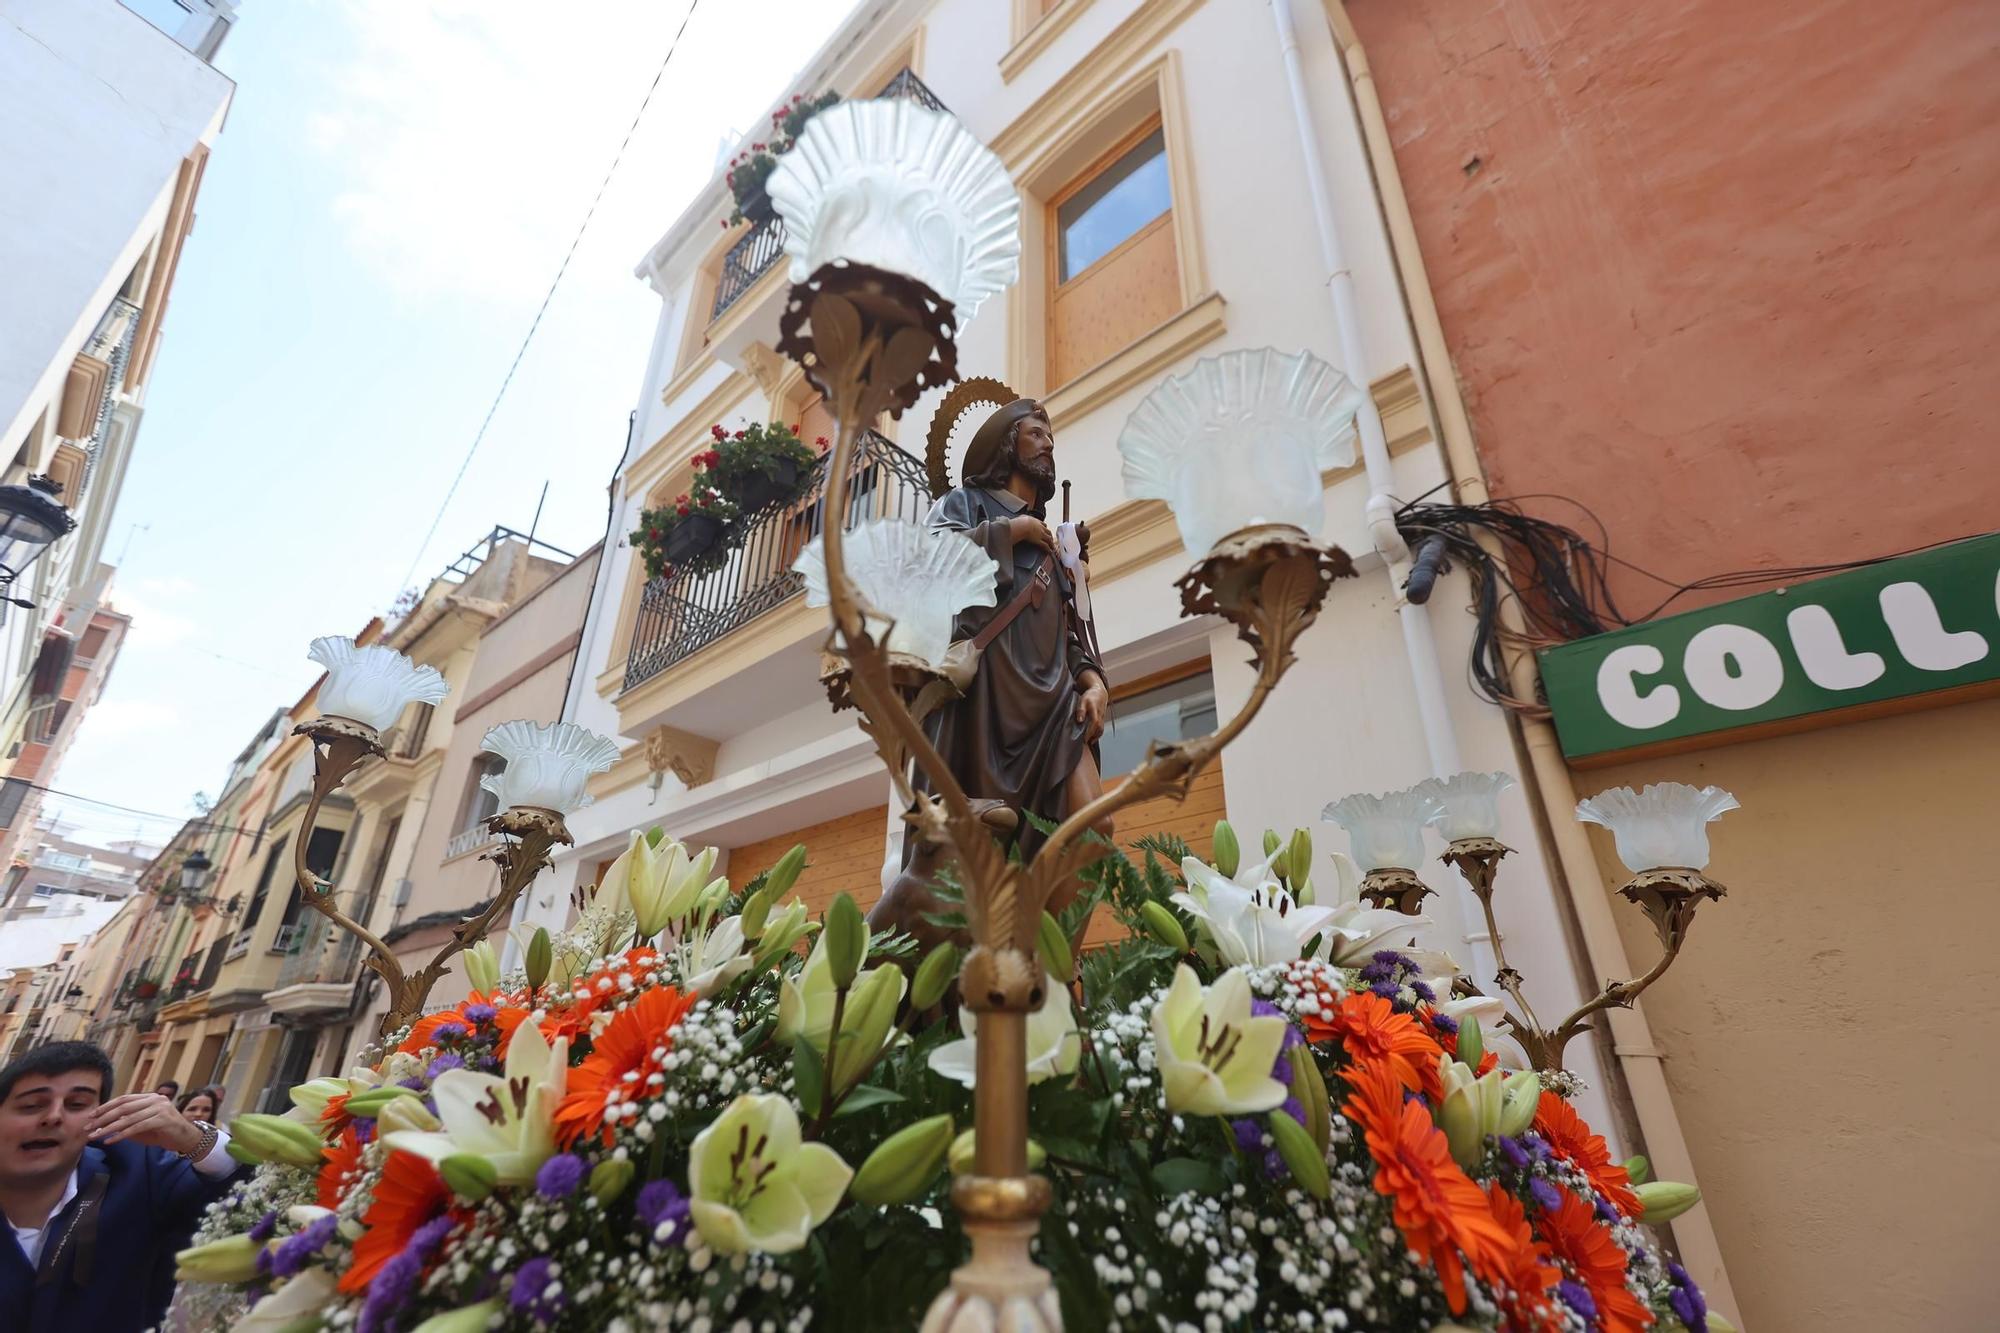 Procesión y misa en honor a Sant Roc en Castelló